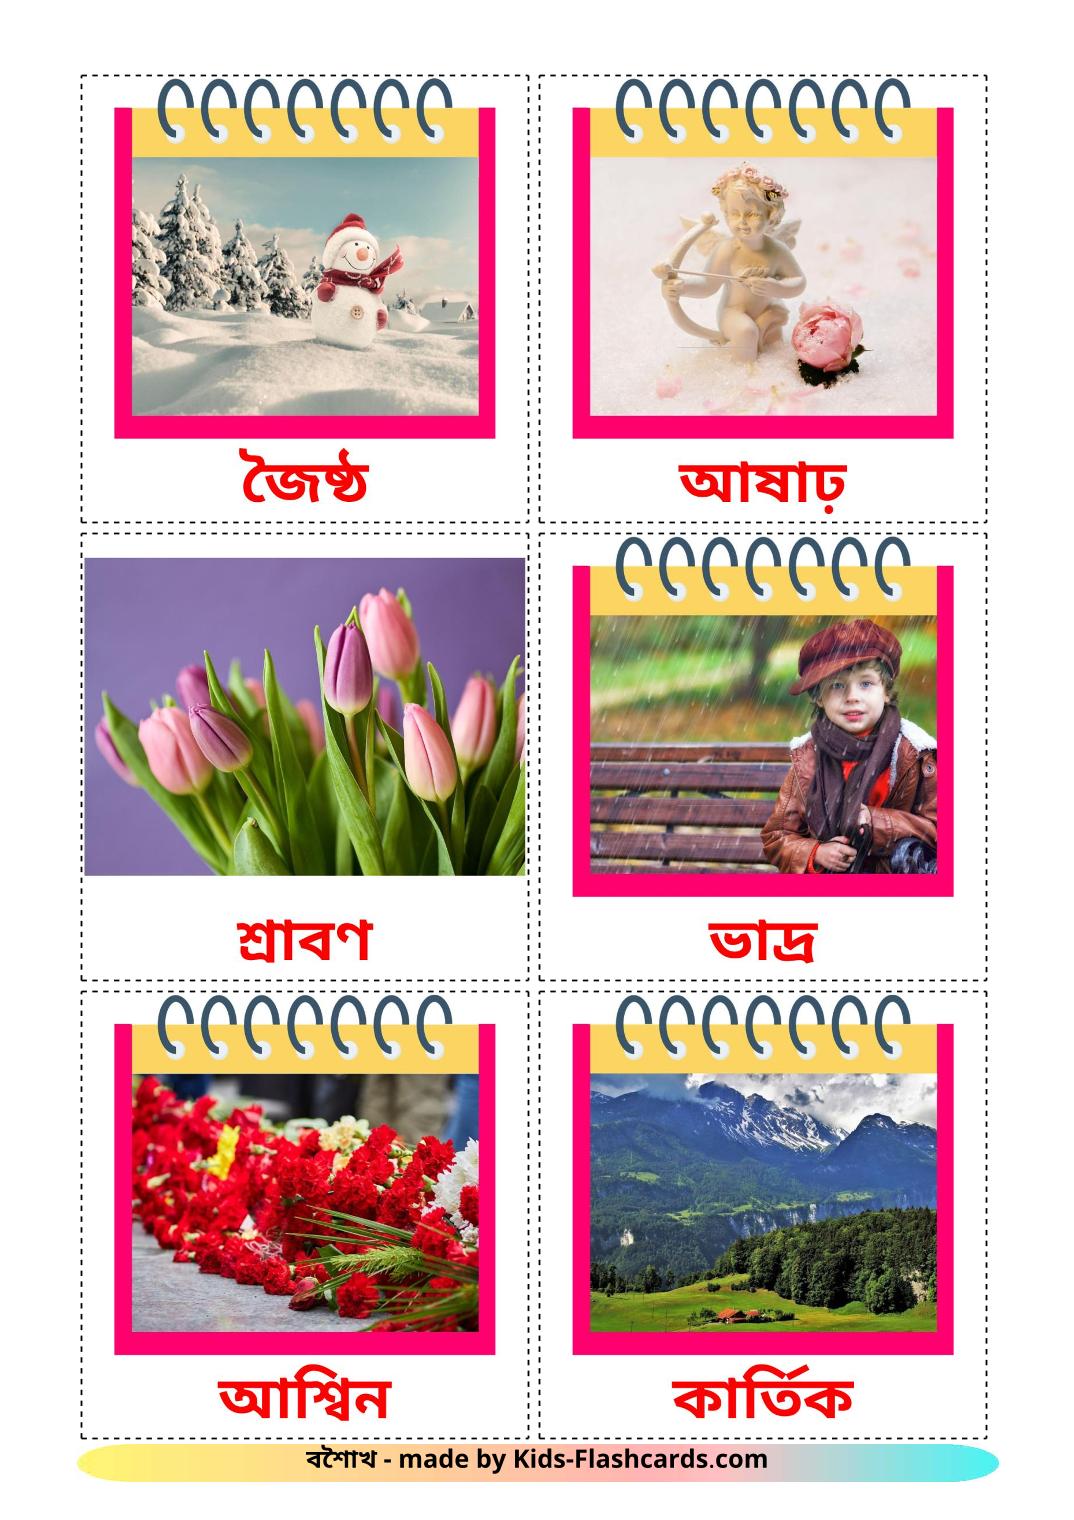 Meses do ano - 12 Flashcards bengalies gratuitos para impressão